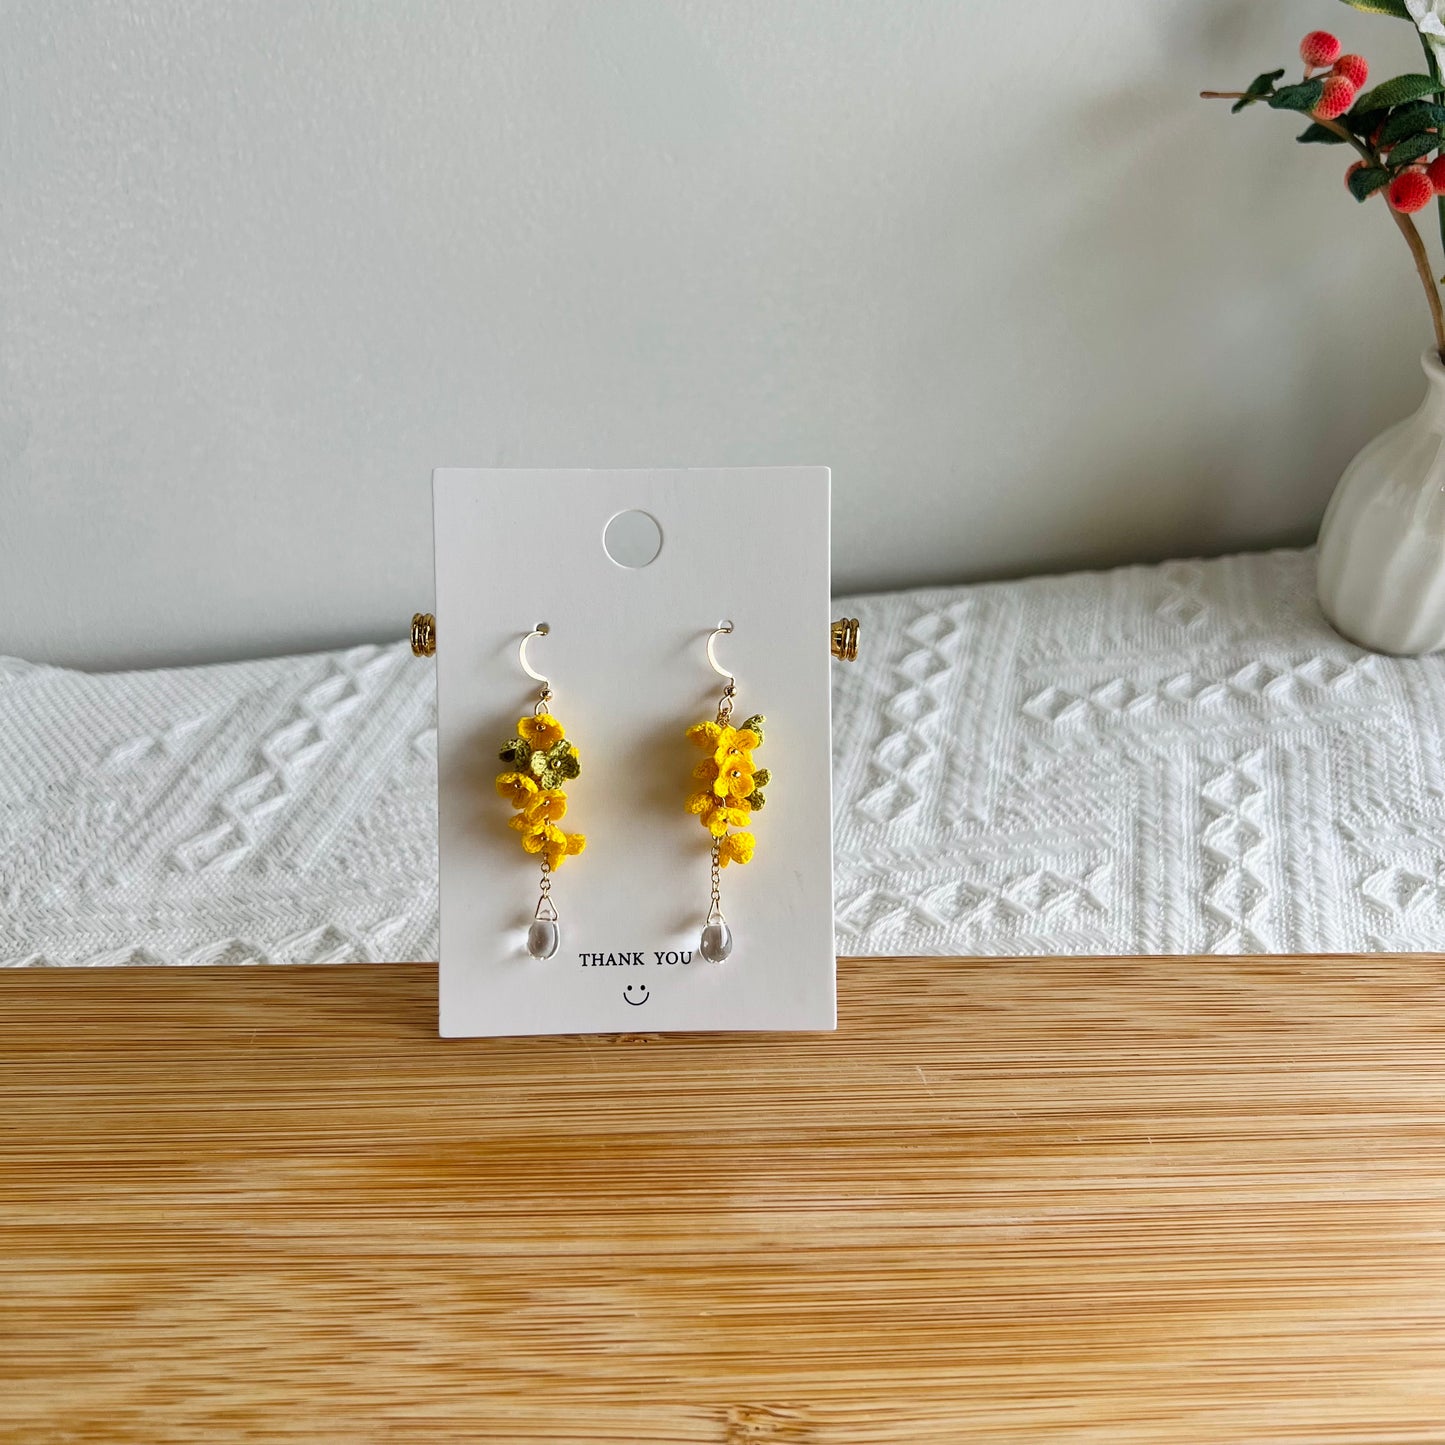 Micro Crochet Flower Earrings | Handmade Dangle Earrings | Unique Gift for Her